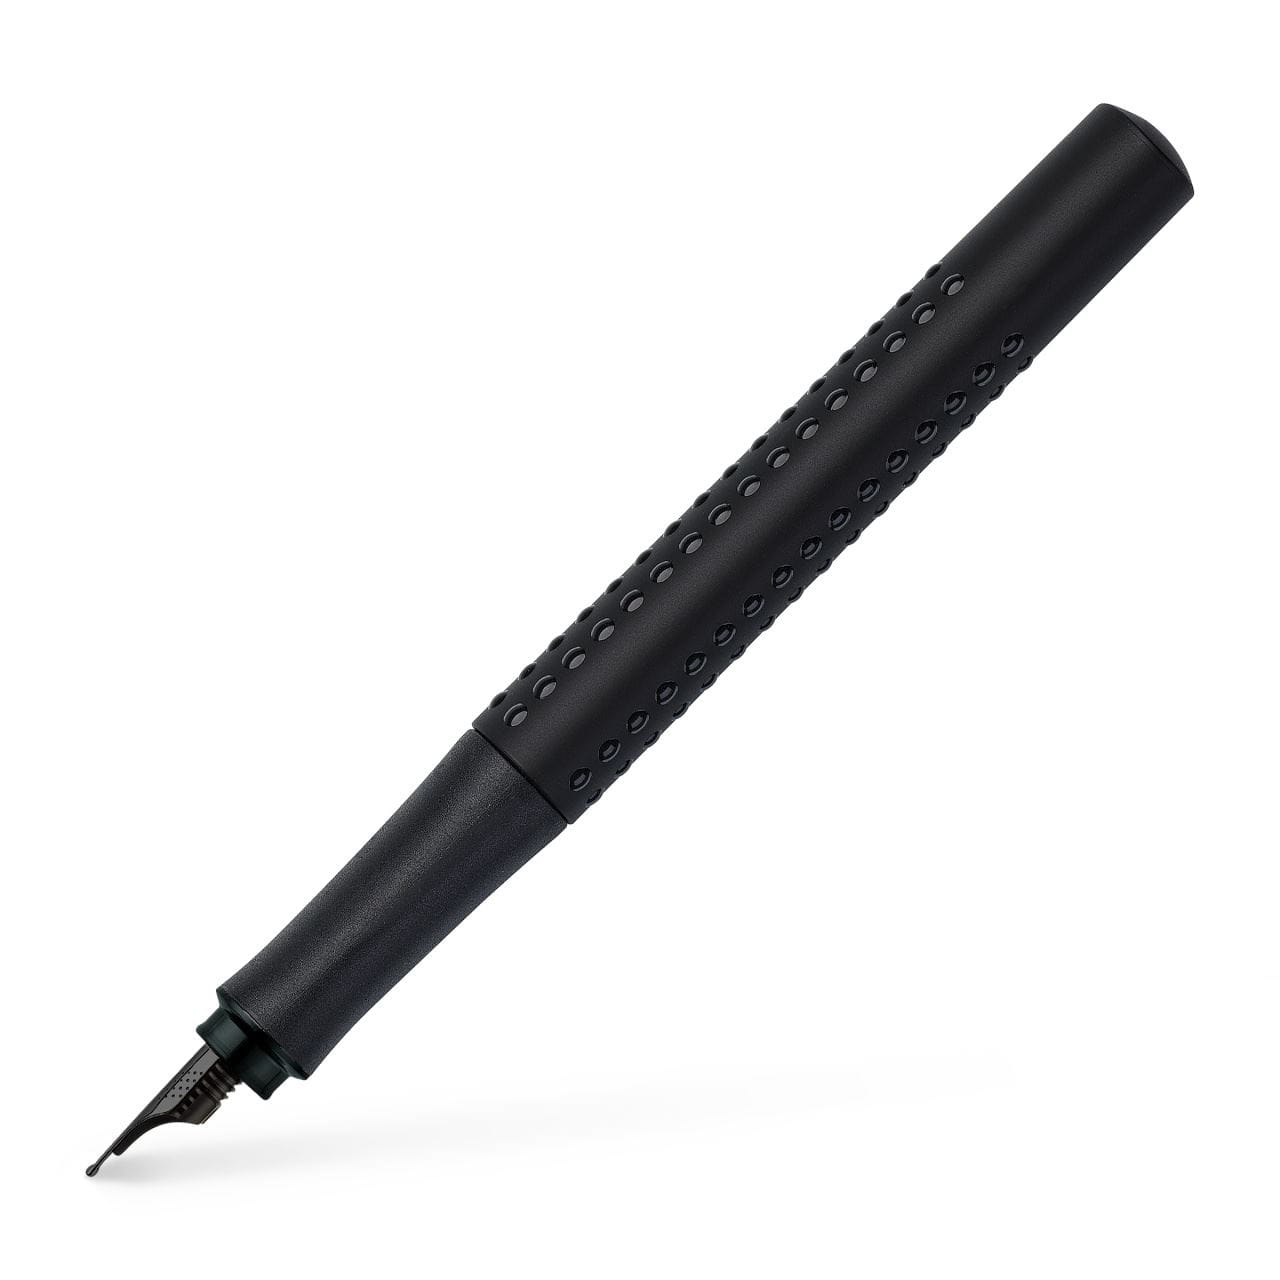 Faber-Castell - Plnicí pero Grip Edition, černý hrot EF, černá